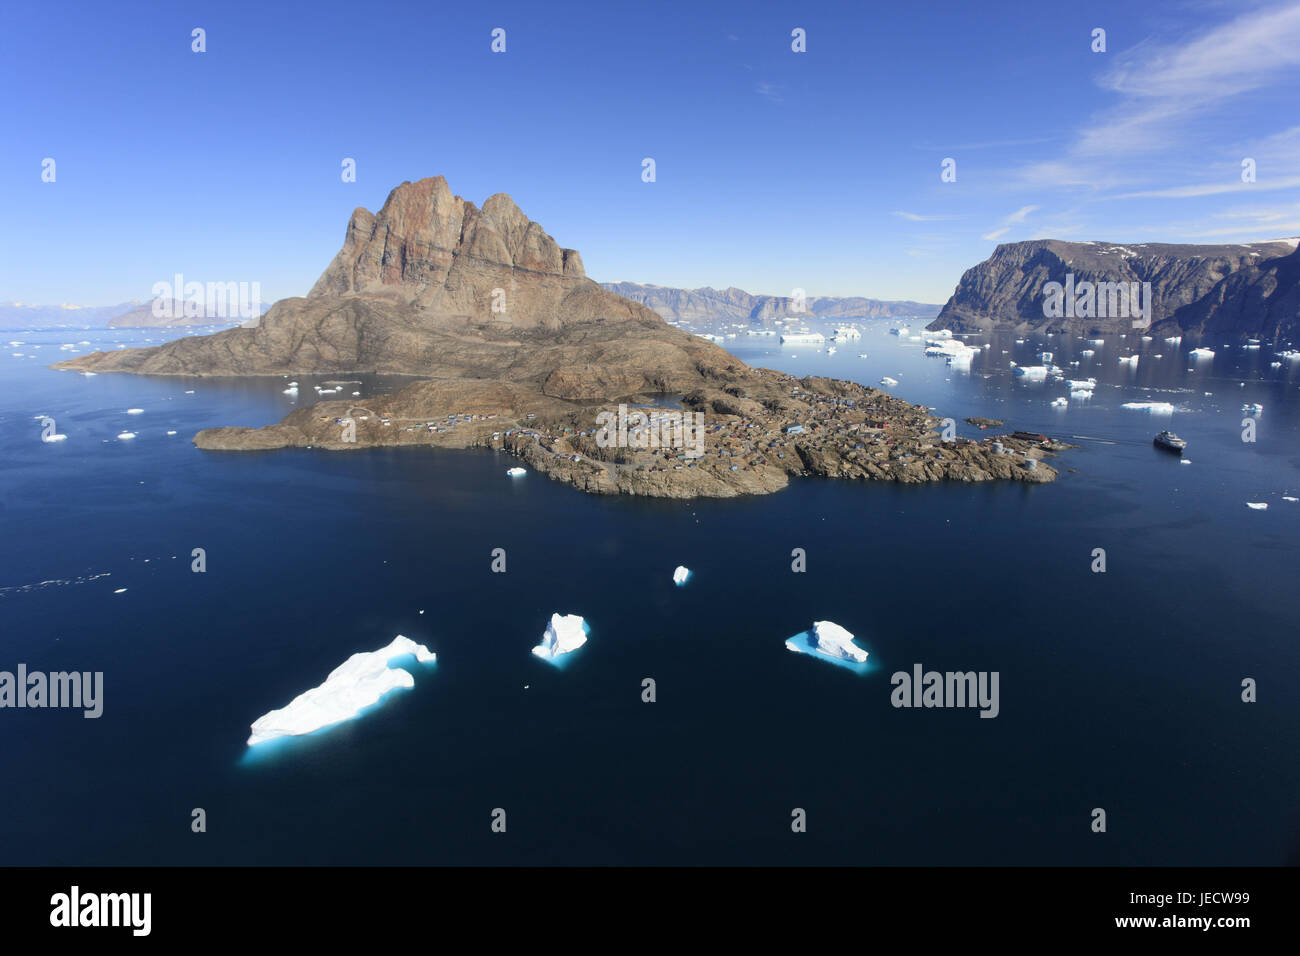 La Groenlandia, Uummannaq, paesaggi costieri, montagne, iceberg, mare, visualizzare il nord della Groenlandia, la destinazione, l'Artico, ghiaccio, deserte, rocce, rocciosa, ghiacciaio, ghiacciaio, scenario, Fjord, larghezza, distanza, sky, opaco, drift, ghiaccio Foto Stock